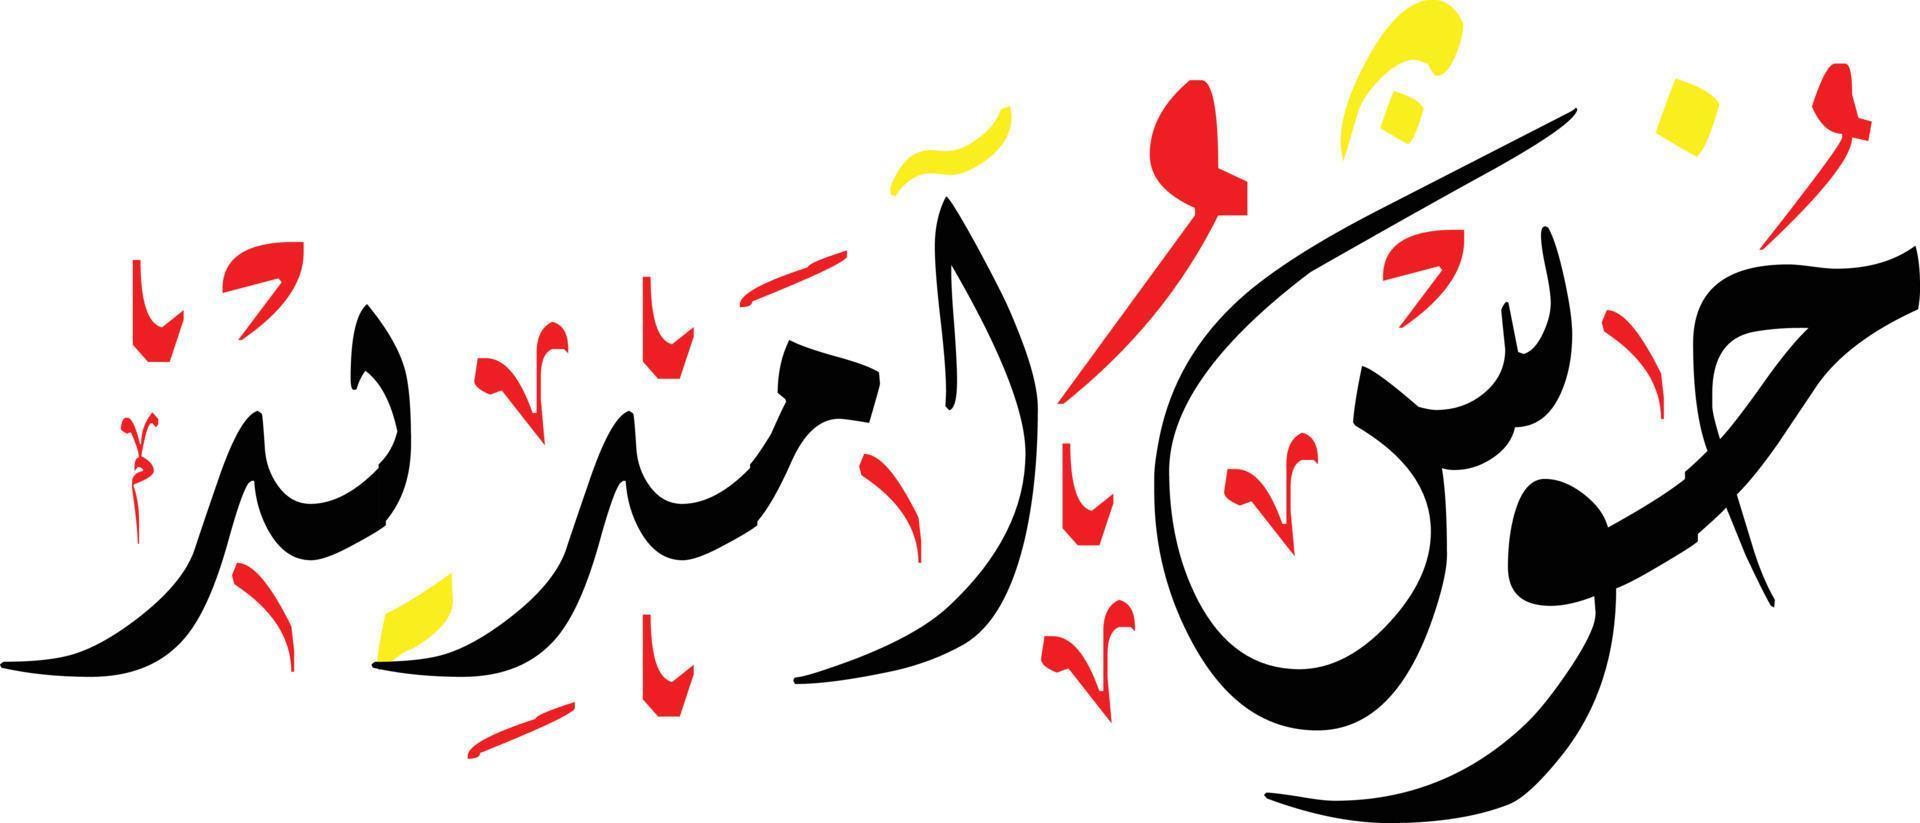 khush aamdeed escrito a mano nastaliq urdu caligrafía, khush amdeed 3d nastaliq caligrafía imagen vectorial, caligrafía árabe urdu estilo de fuente árabe, letras en árabe urdu, imagen png de khush amdeed, vector